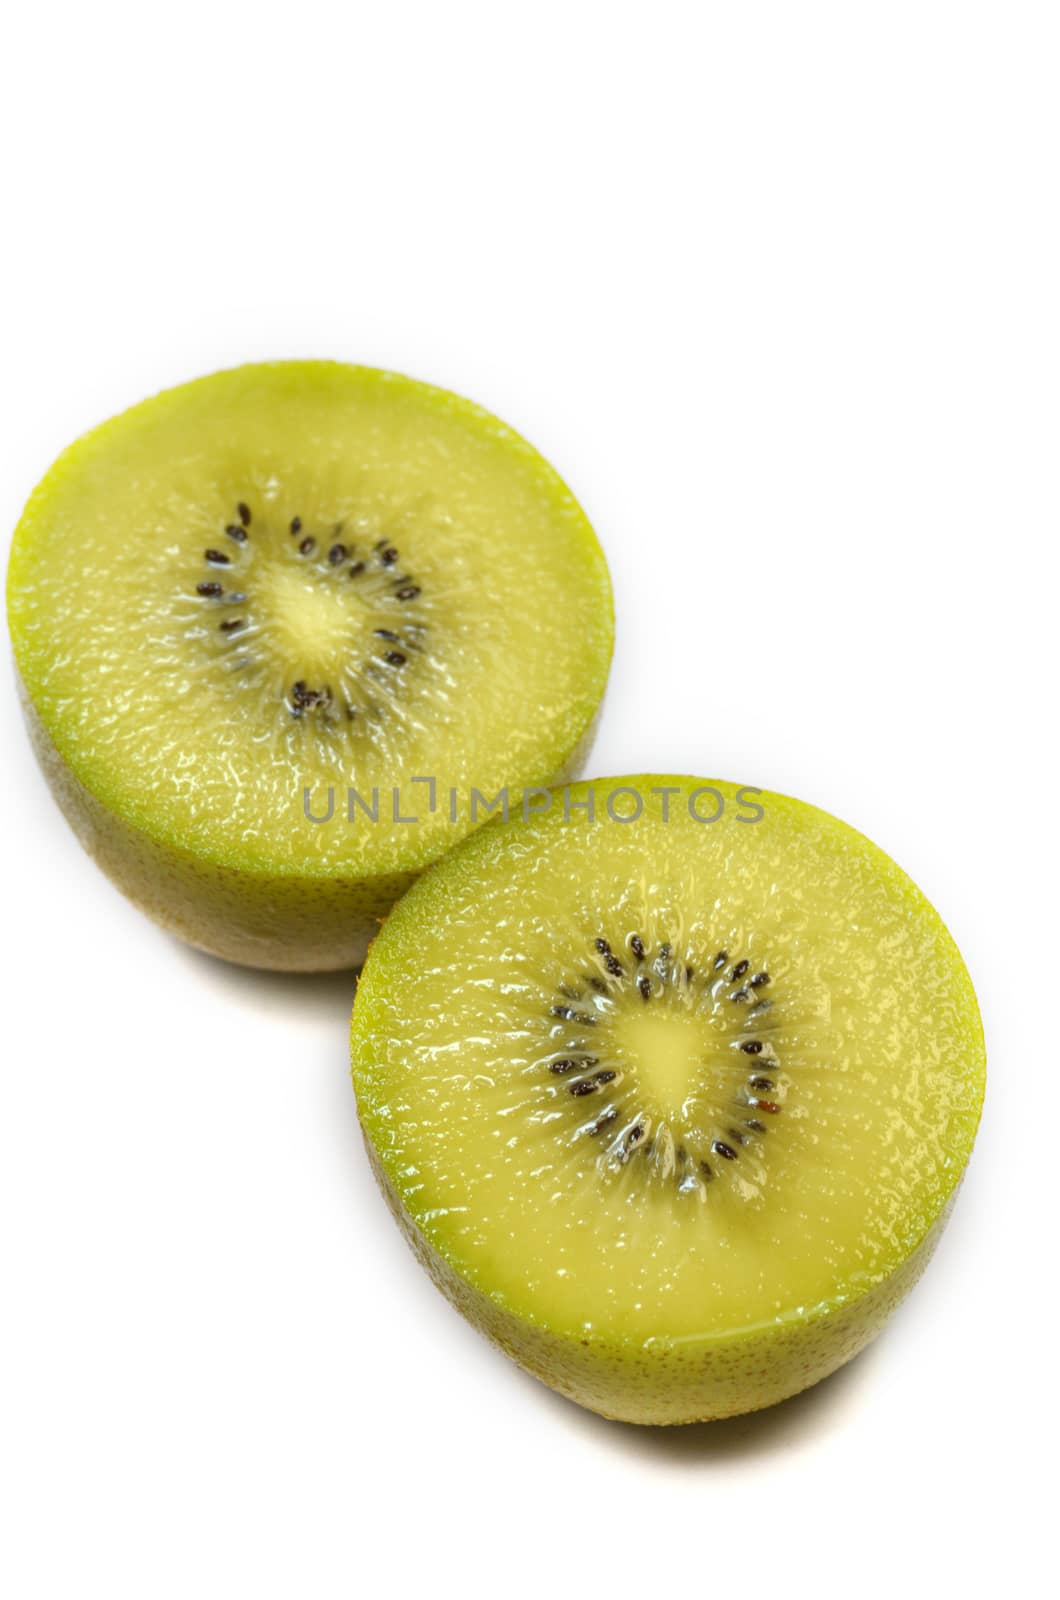 Yellow kiwi fruit by tang90246